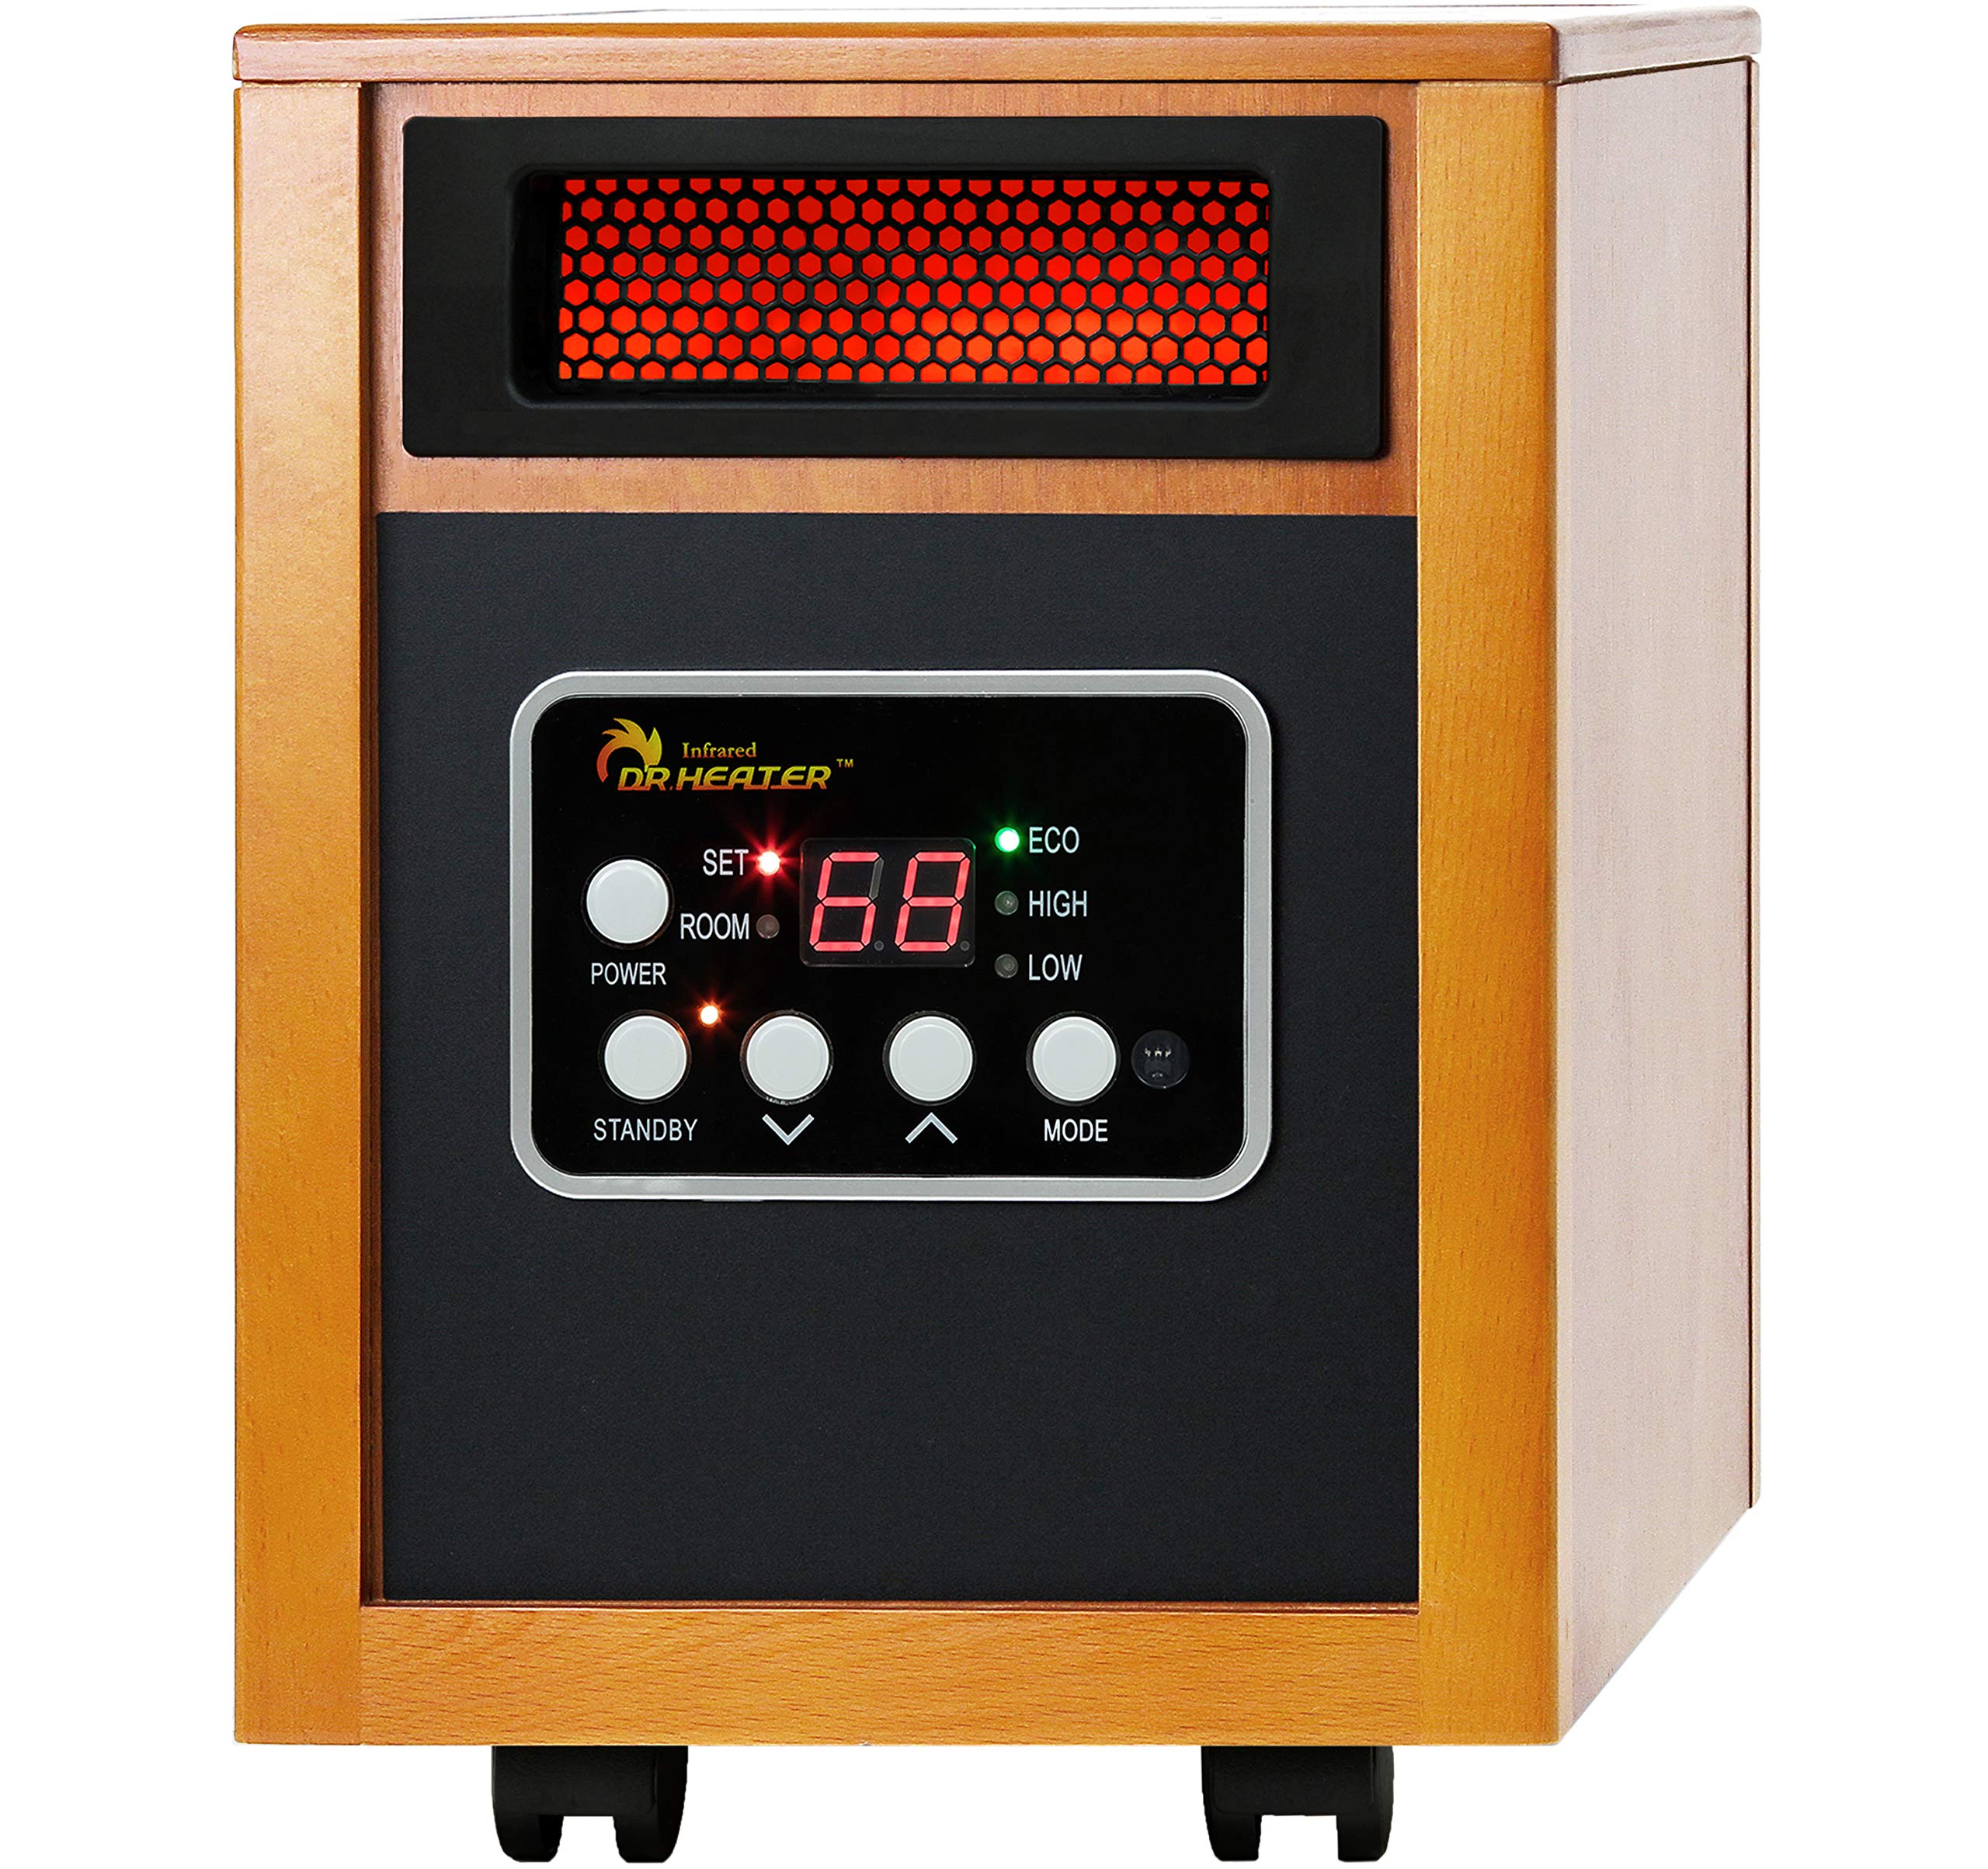 Dr Infrared Heater دفاية كهربائية محمولة 1500 وات...